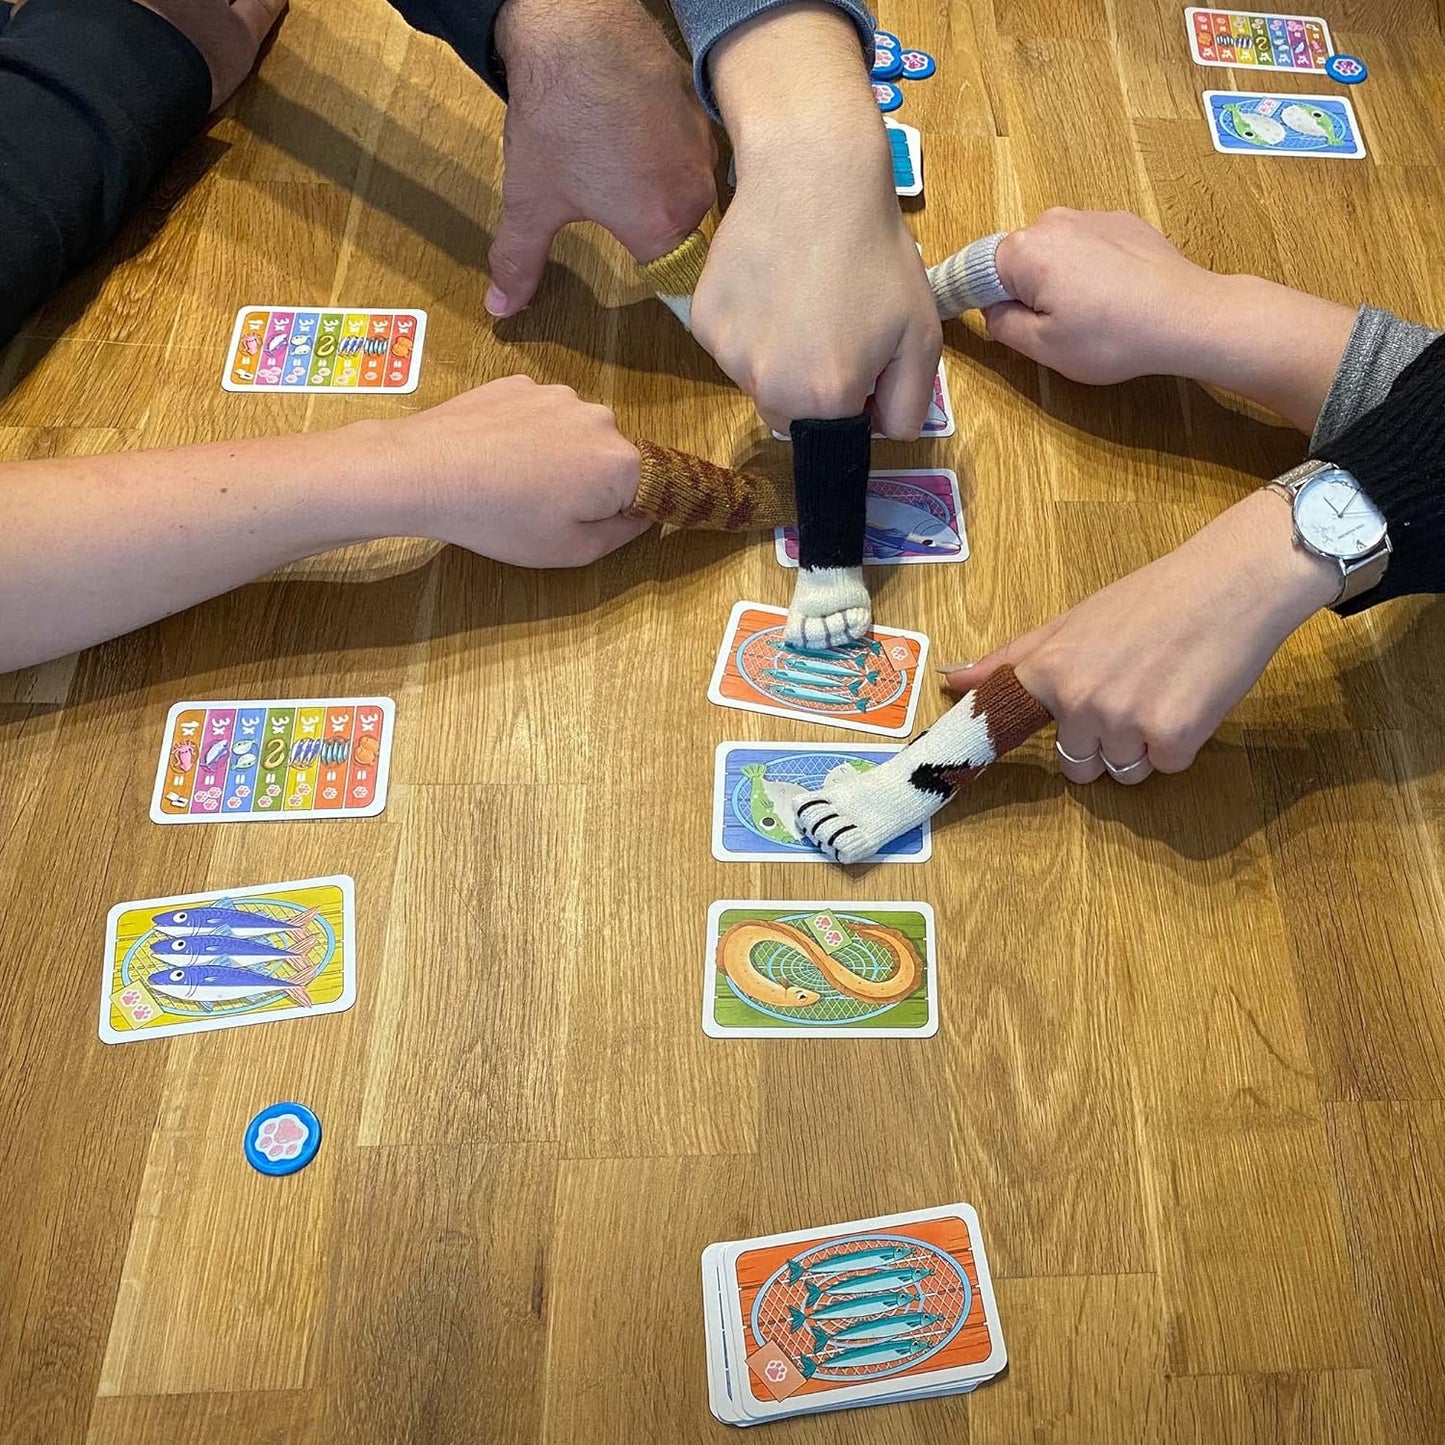 Card Game - Fish & Katz